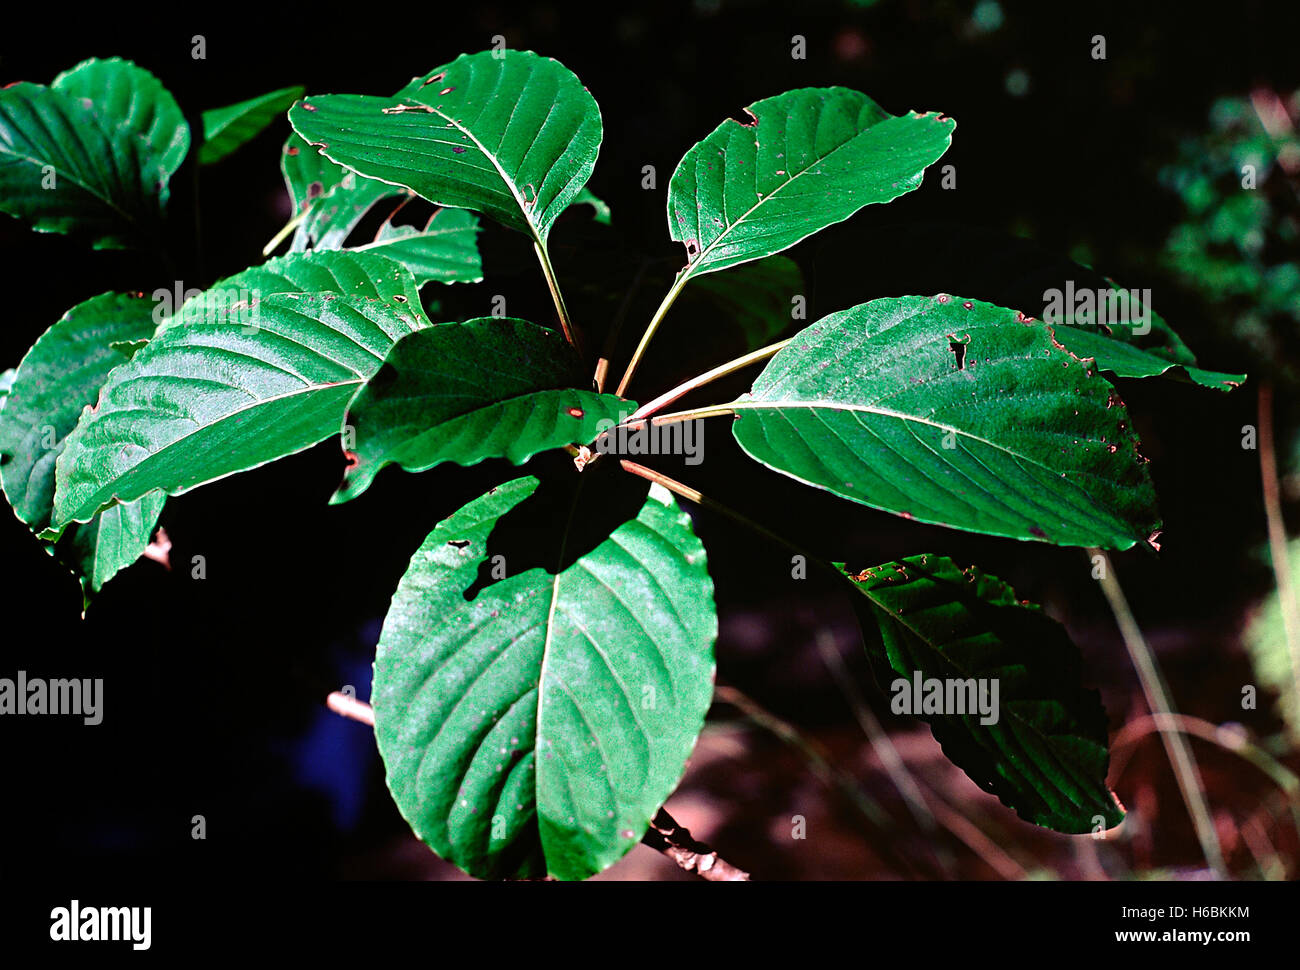 Foglie. Imenodictyon sp. Famiglia: Rubiaceae. Un grande albero deciduo con legno chiaro. Le foglie e i rami hanno una disposizione sibilante Foto Stock